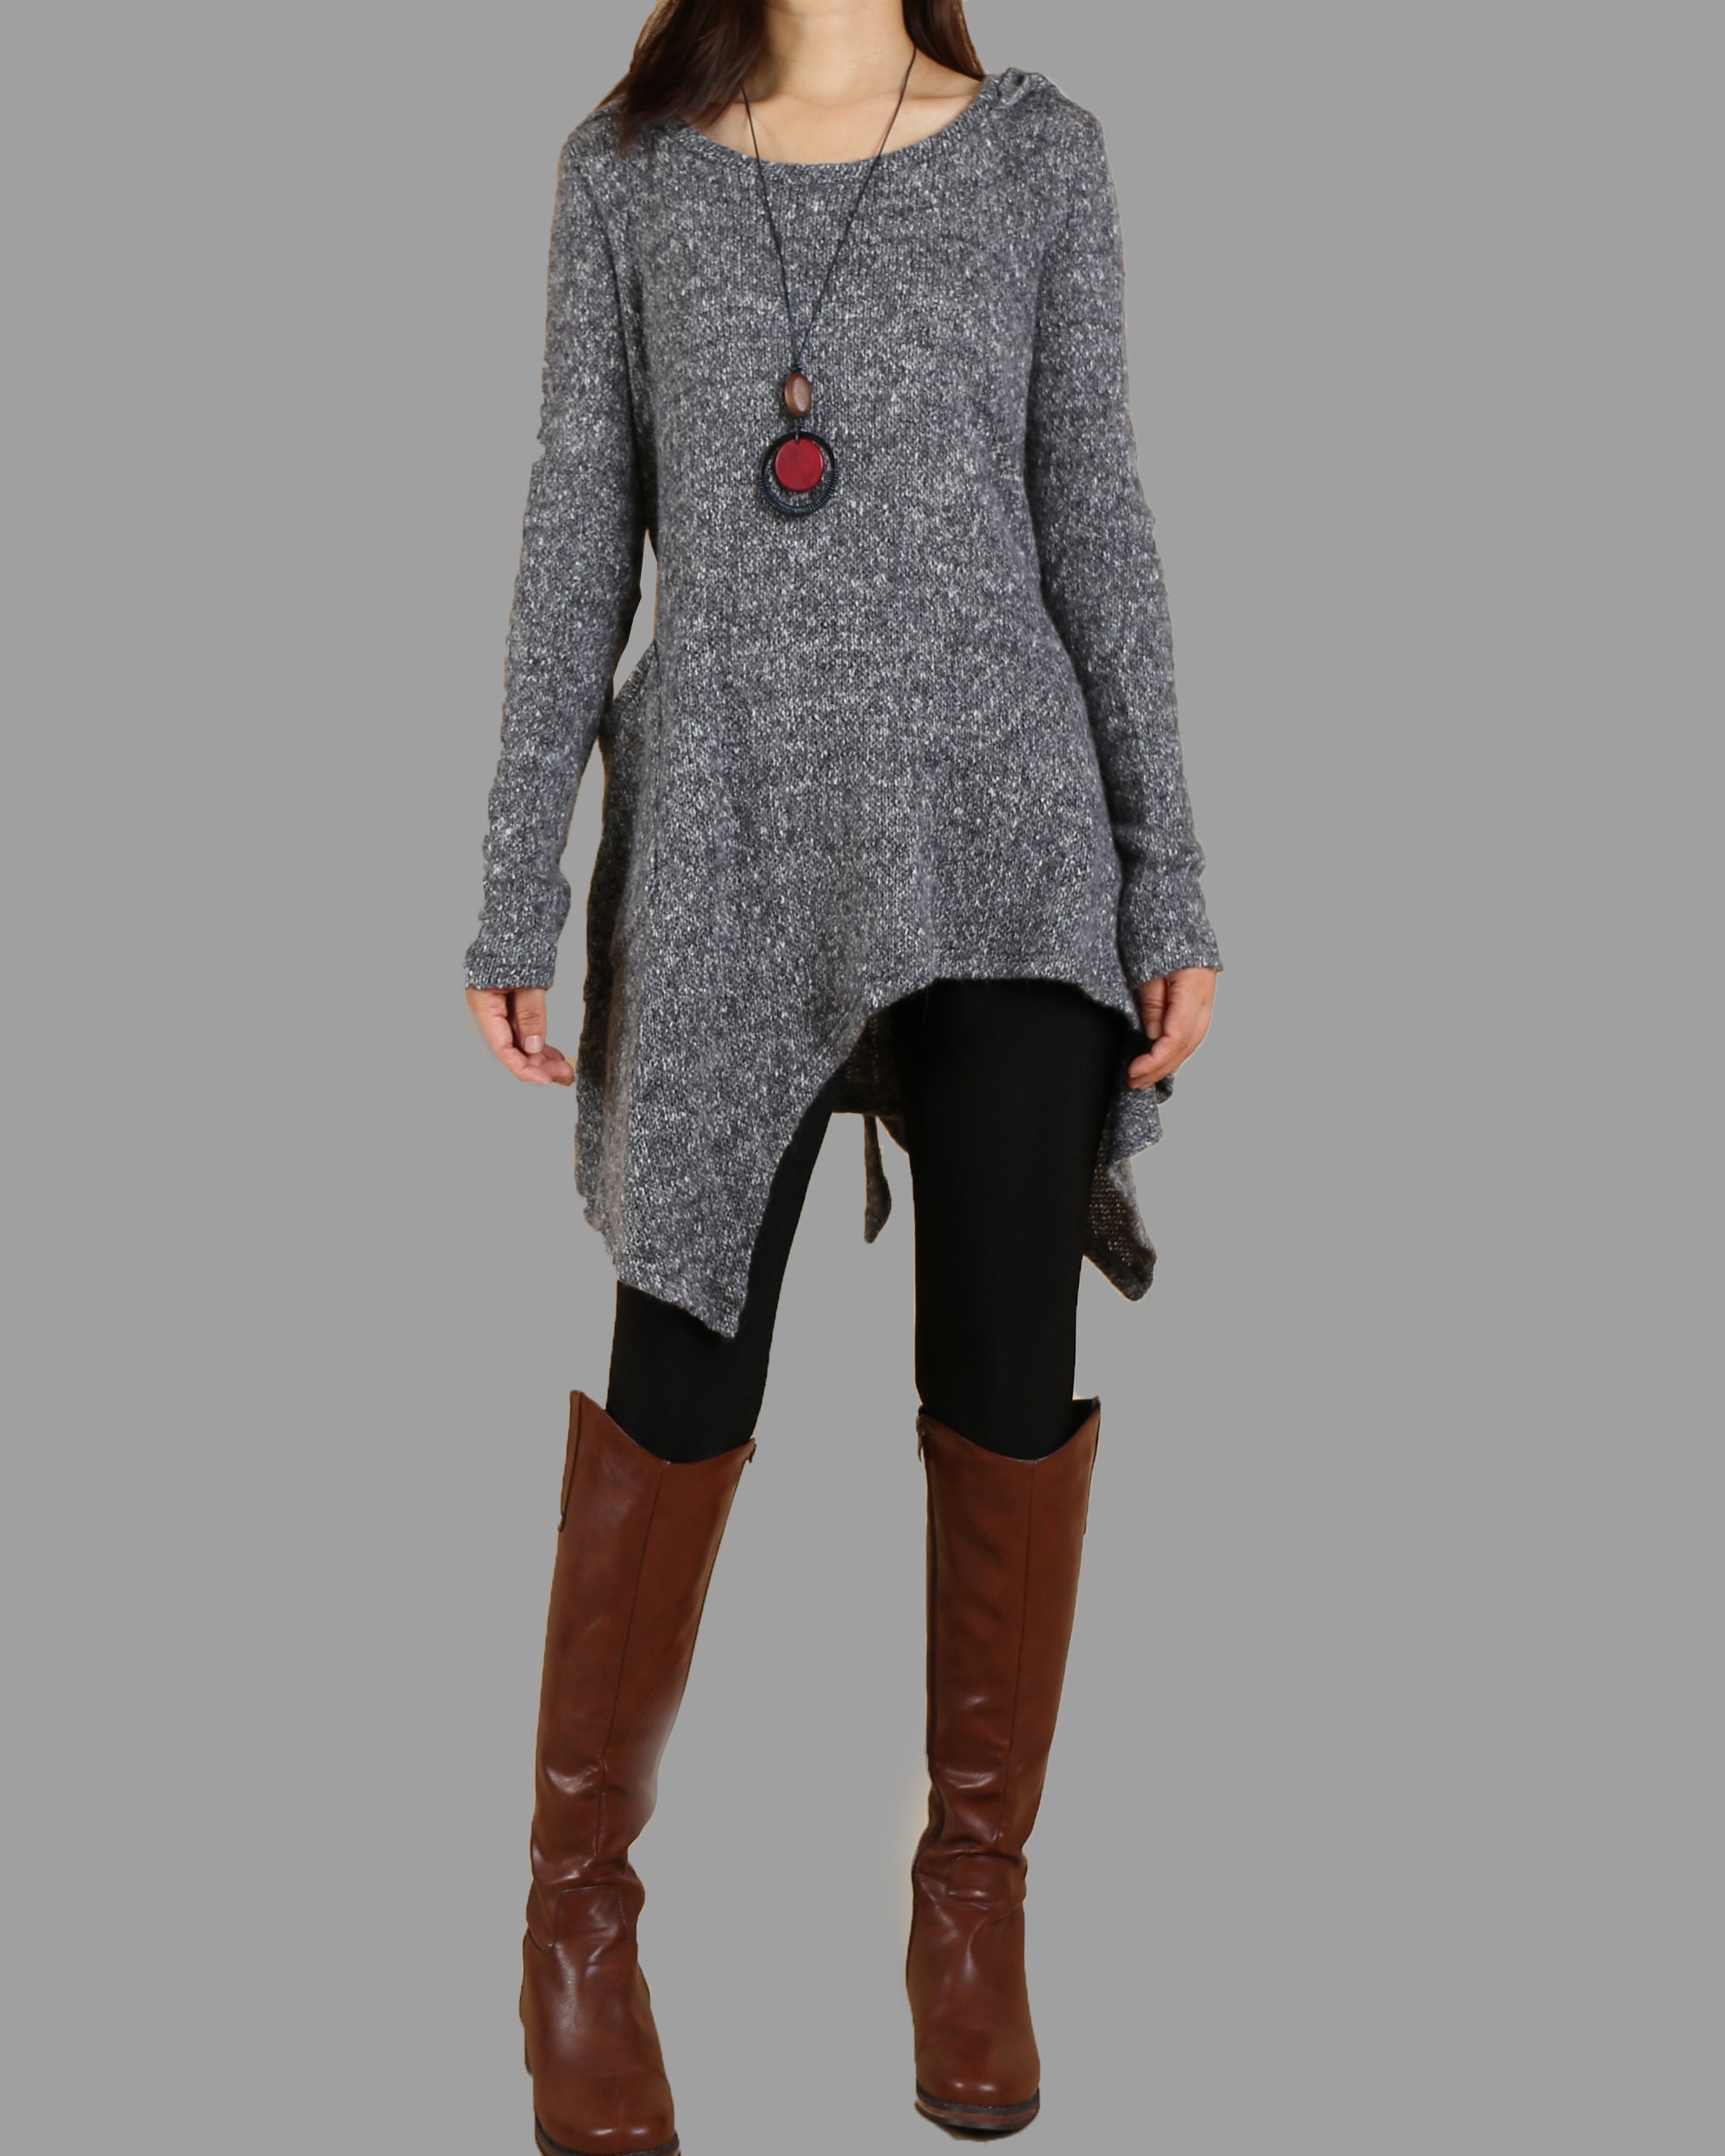 Sweater dress Pullover sweater women Asymmetrical knit | Etsy